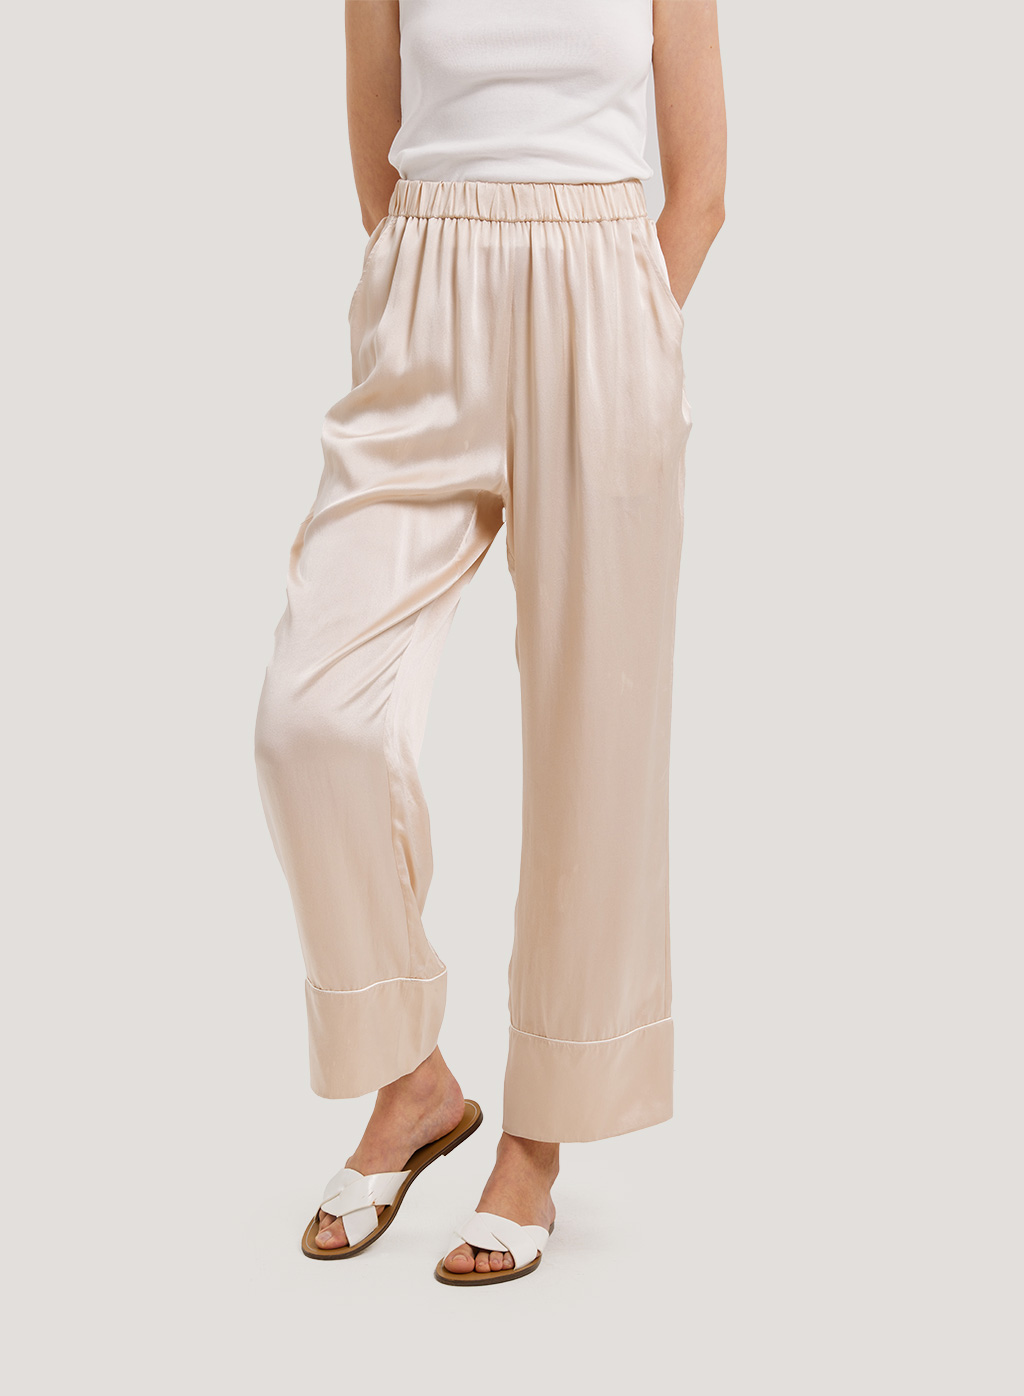 Washable 100% Silk-Satin Pajama Pants